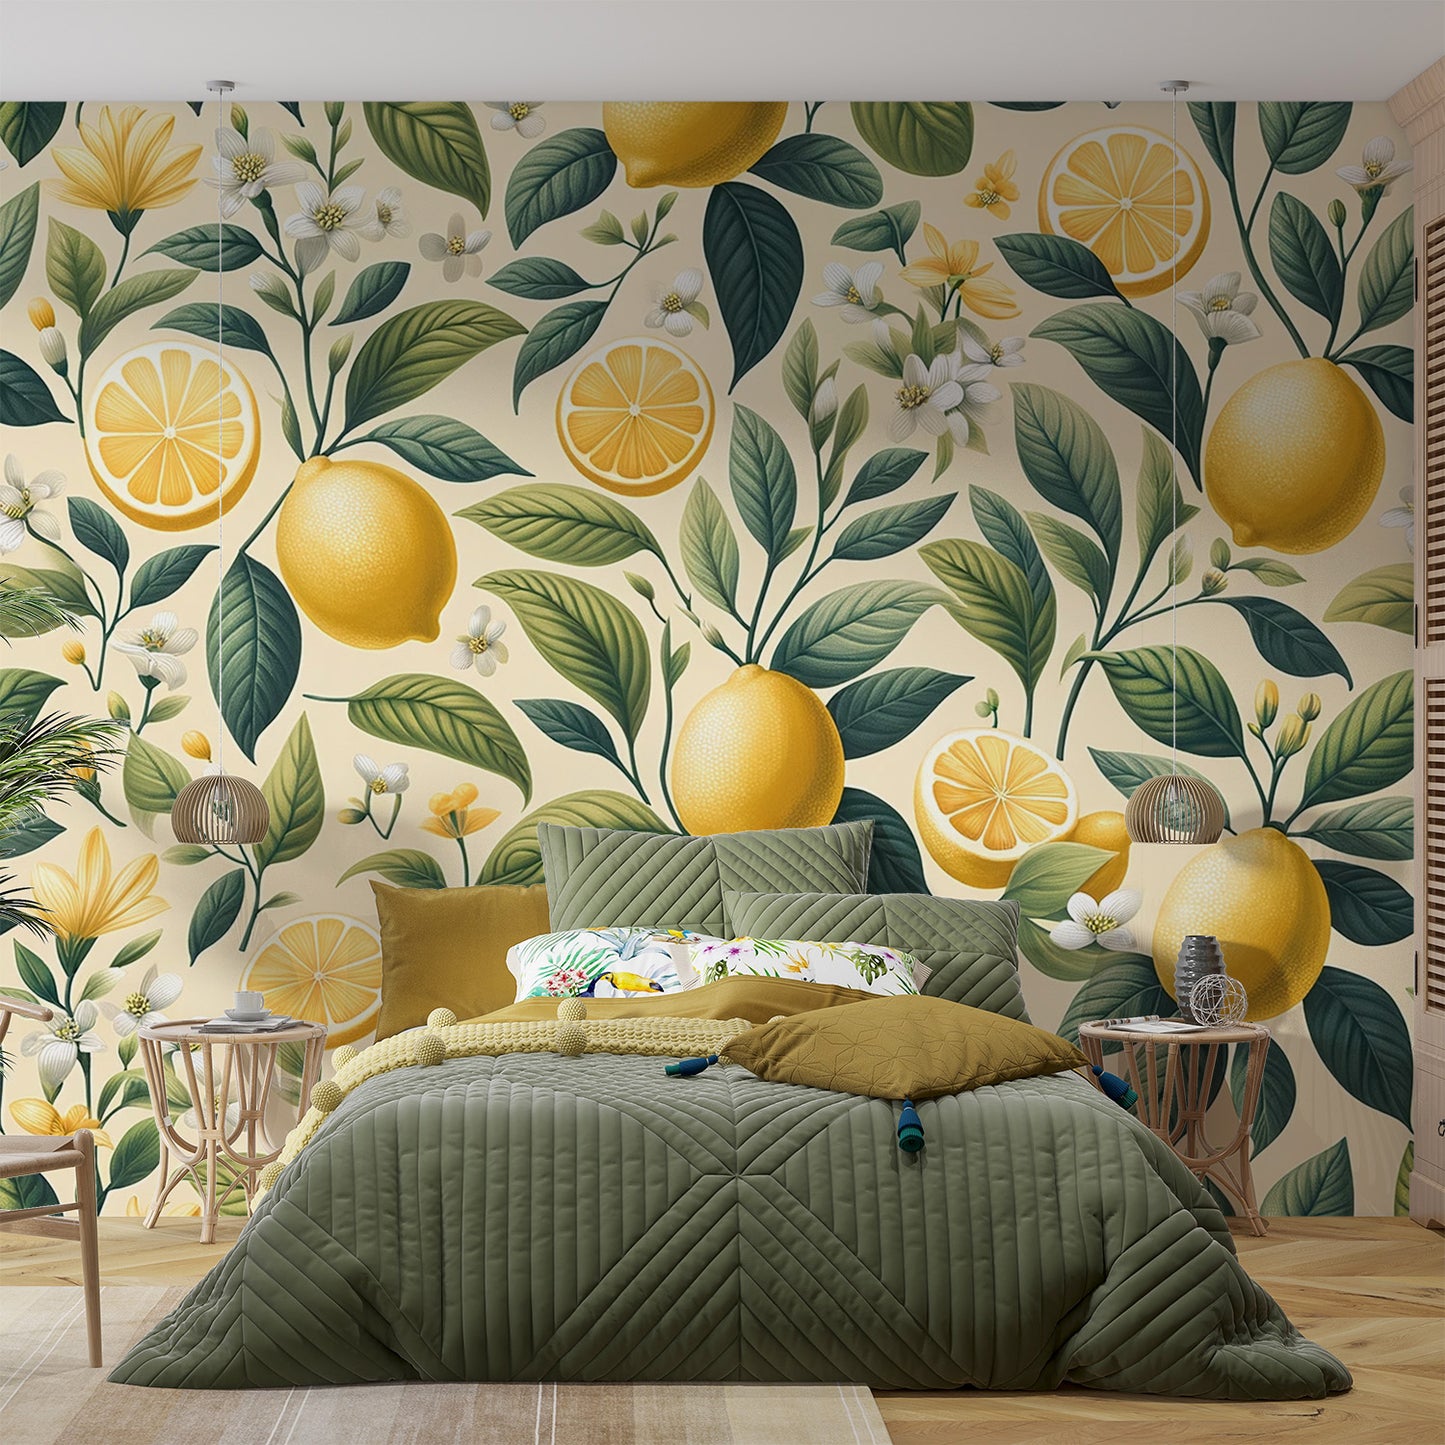 Papier peint citron jaune | Feuillages verts et fleuris